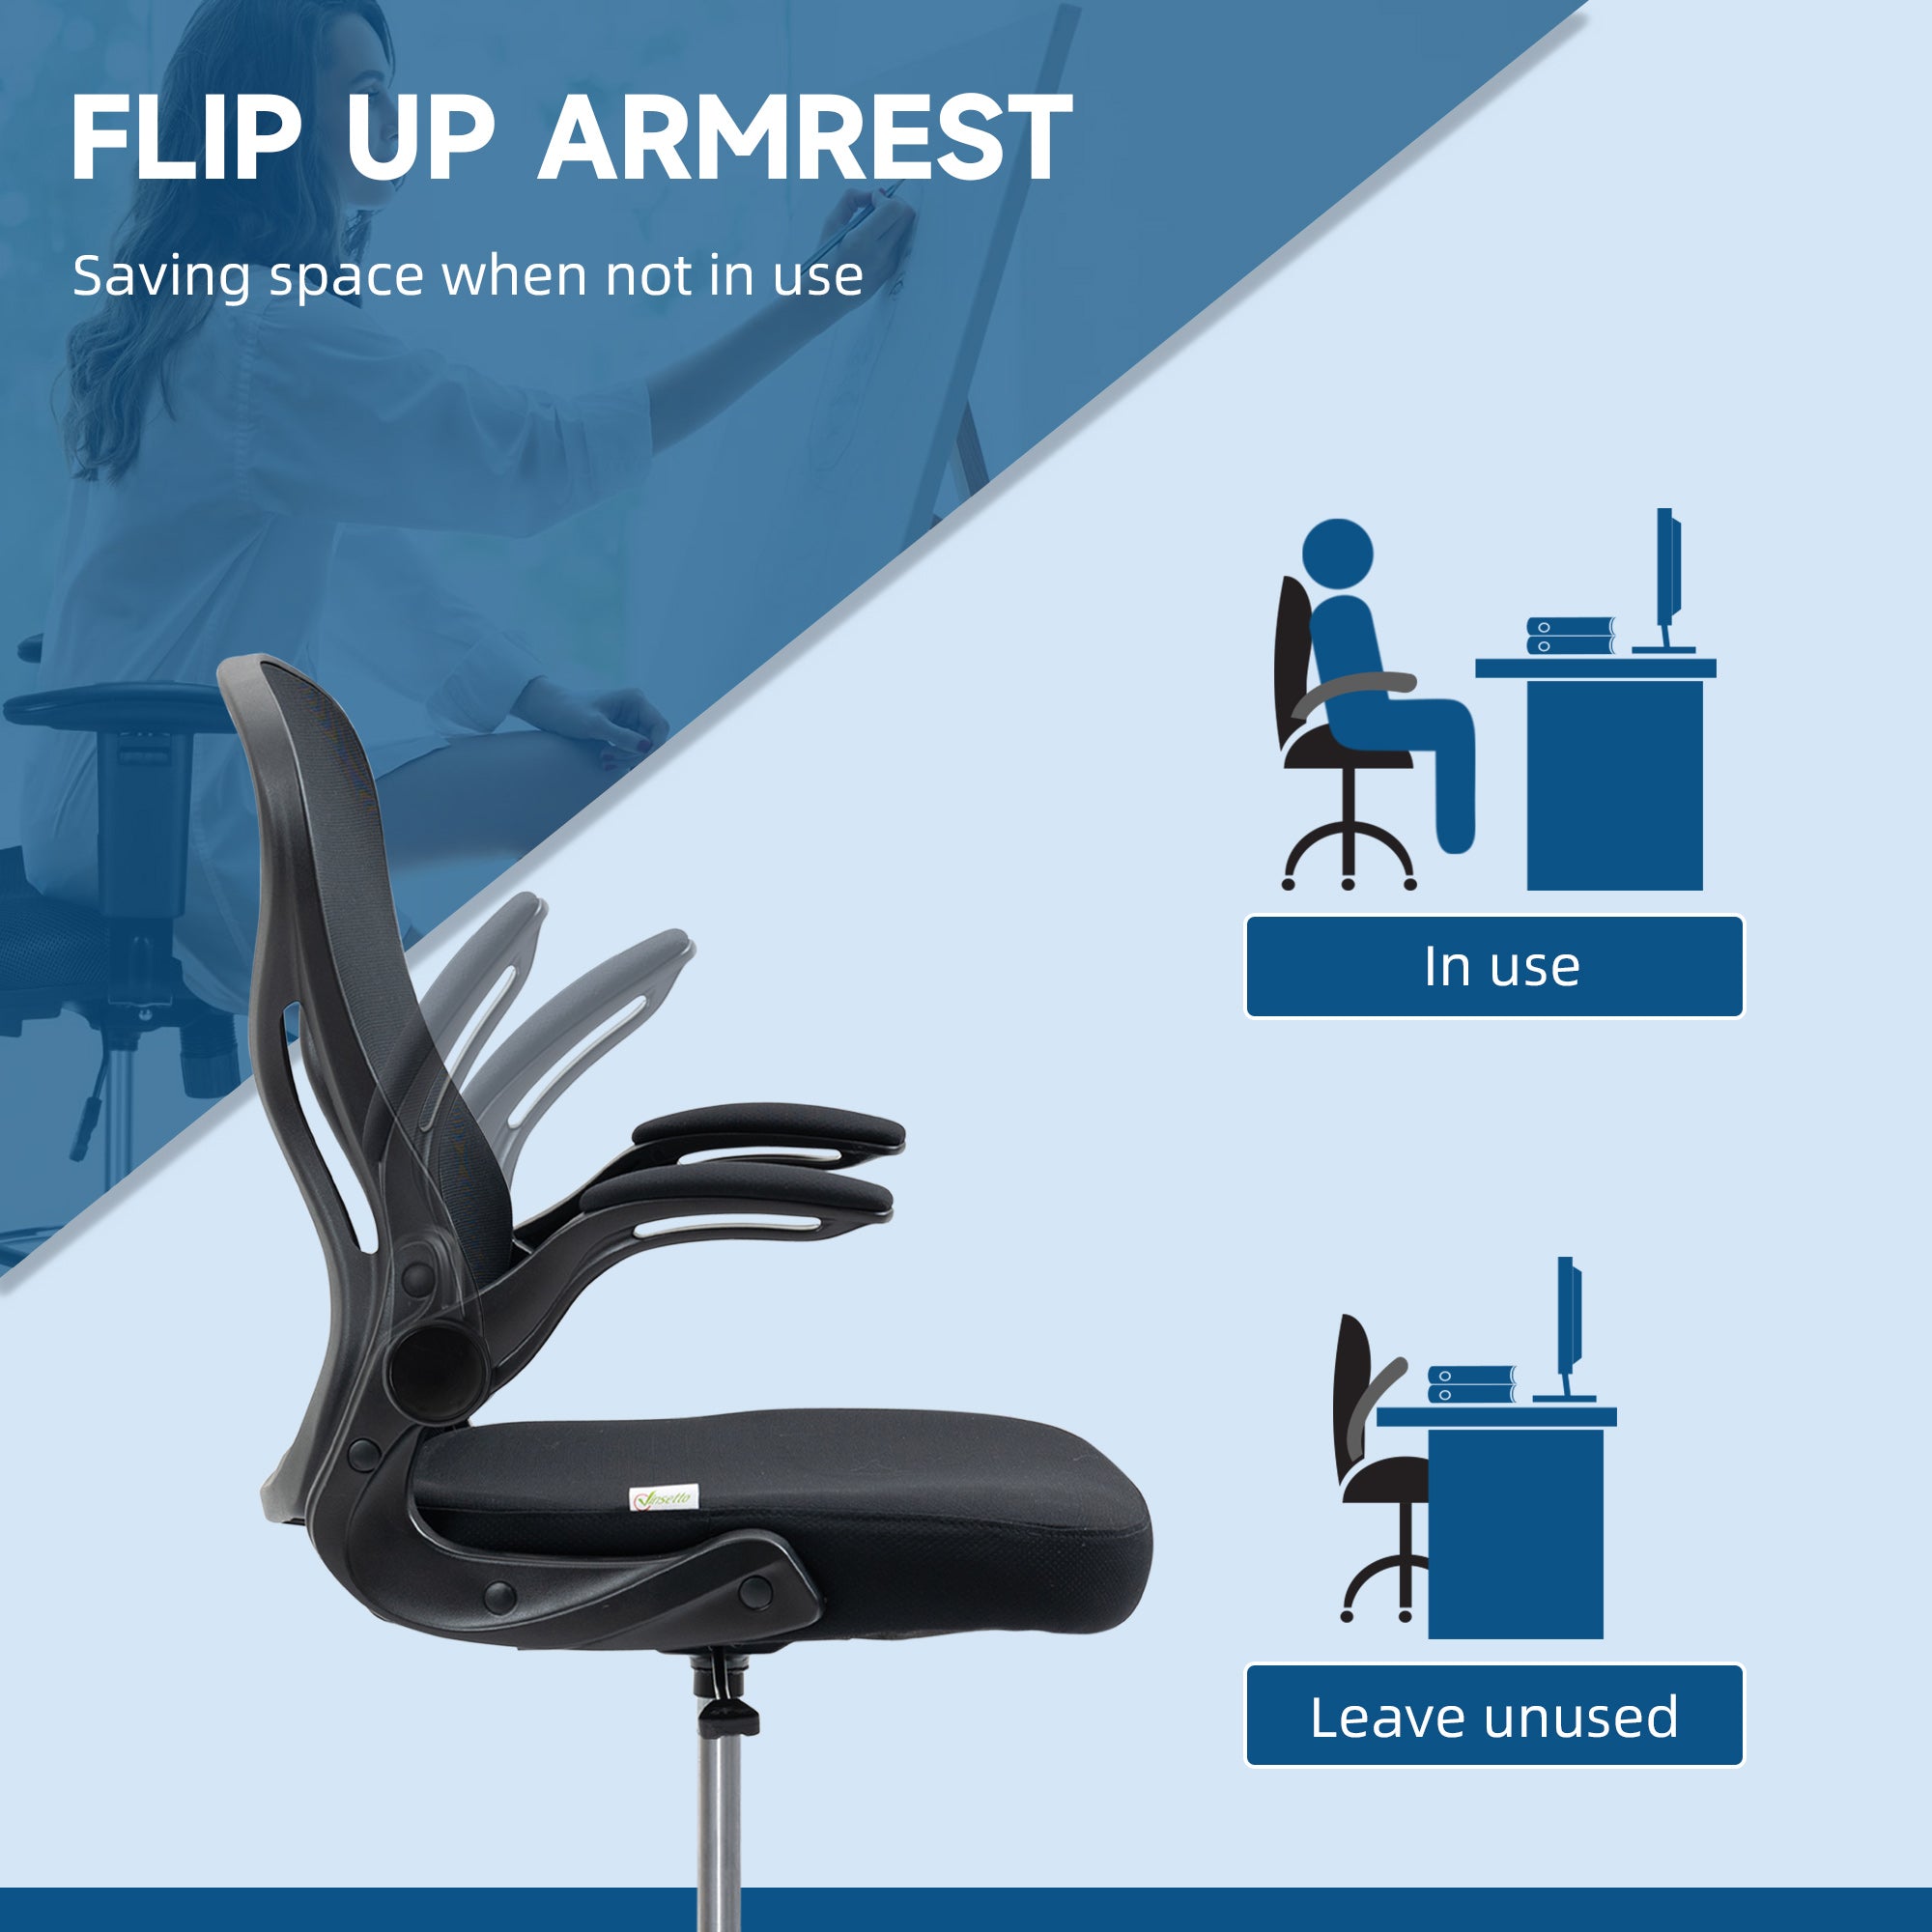 Vinsetto Ergonomic Mesh Standing Desk Chair with Flip-up Armrests Lumbar Support Armrests Adjustable Footrest Ring Black